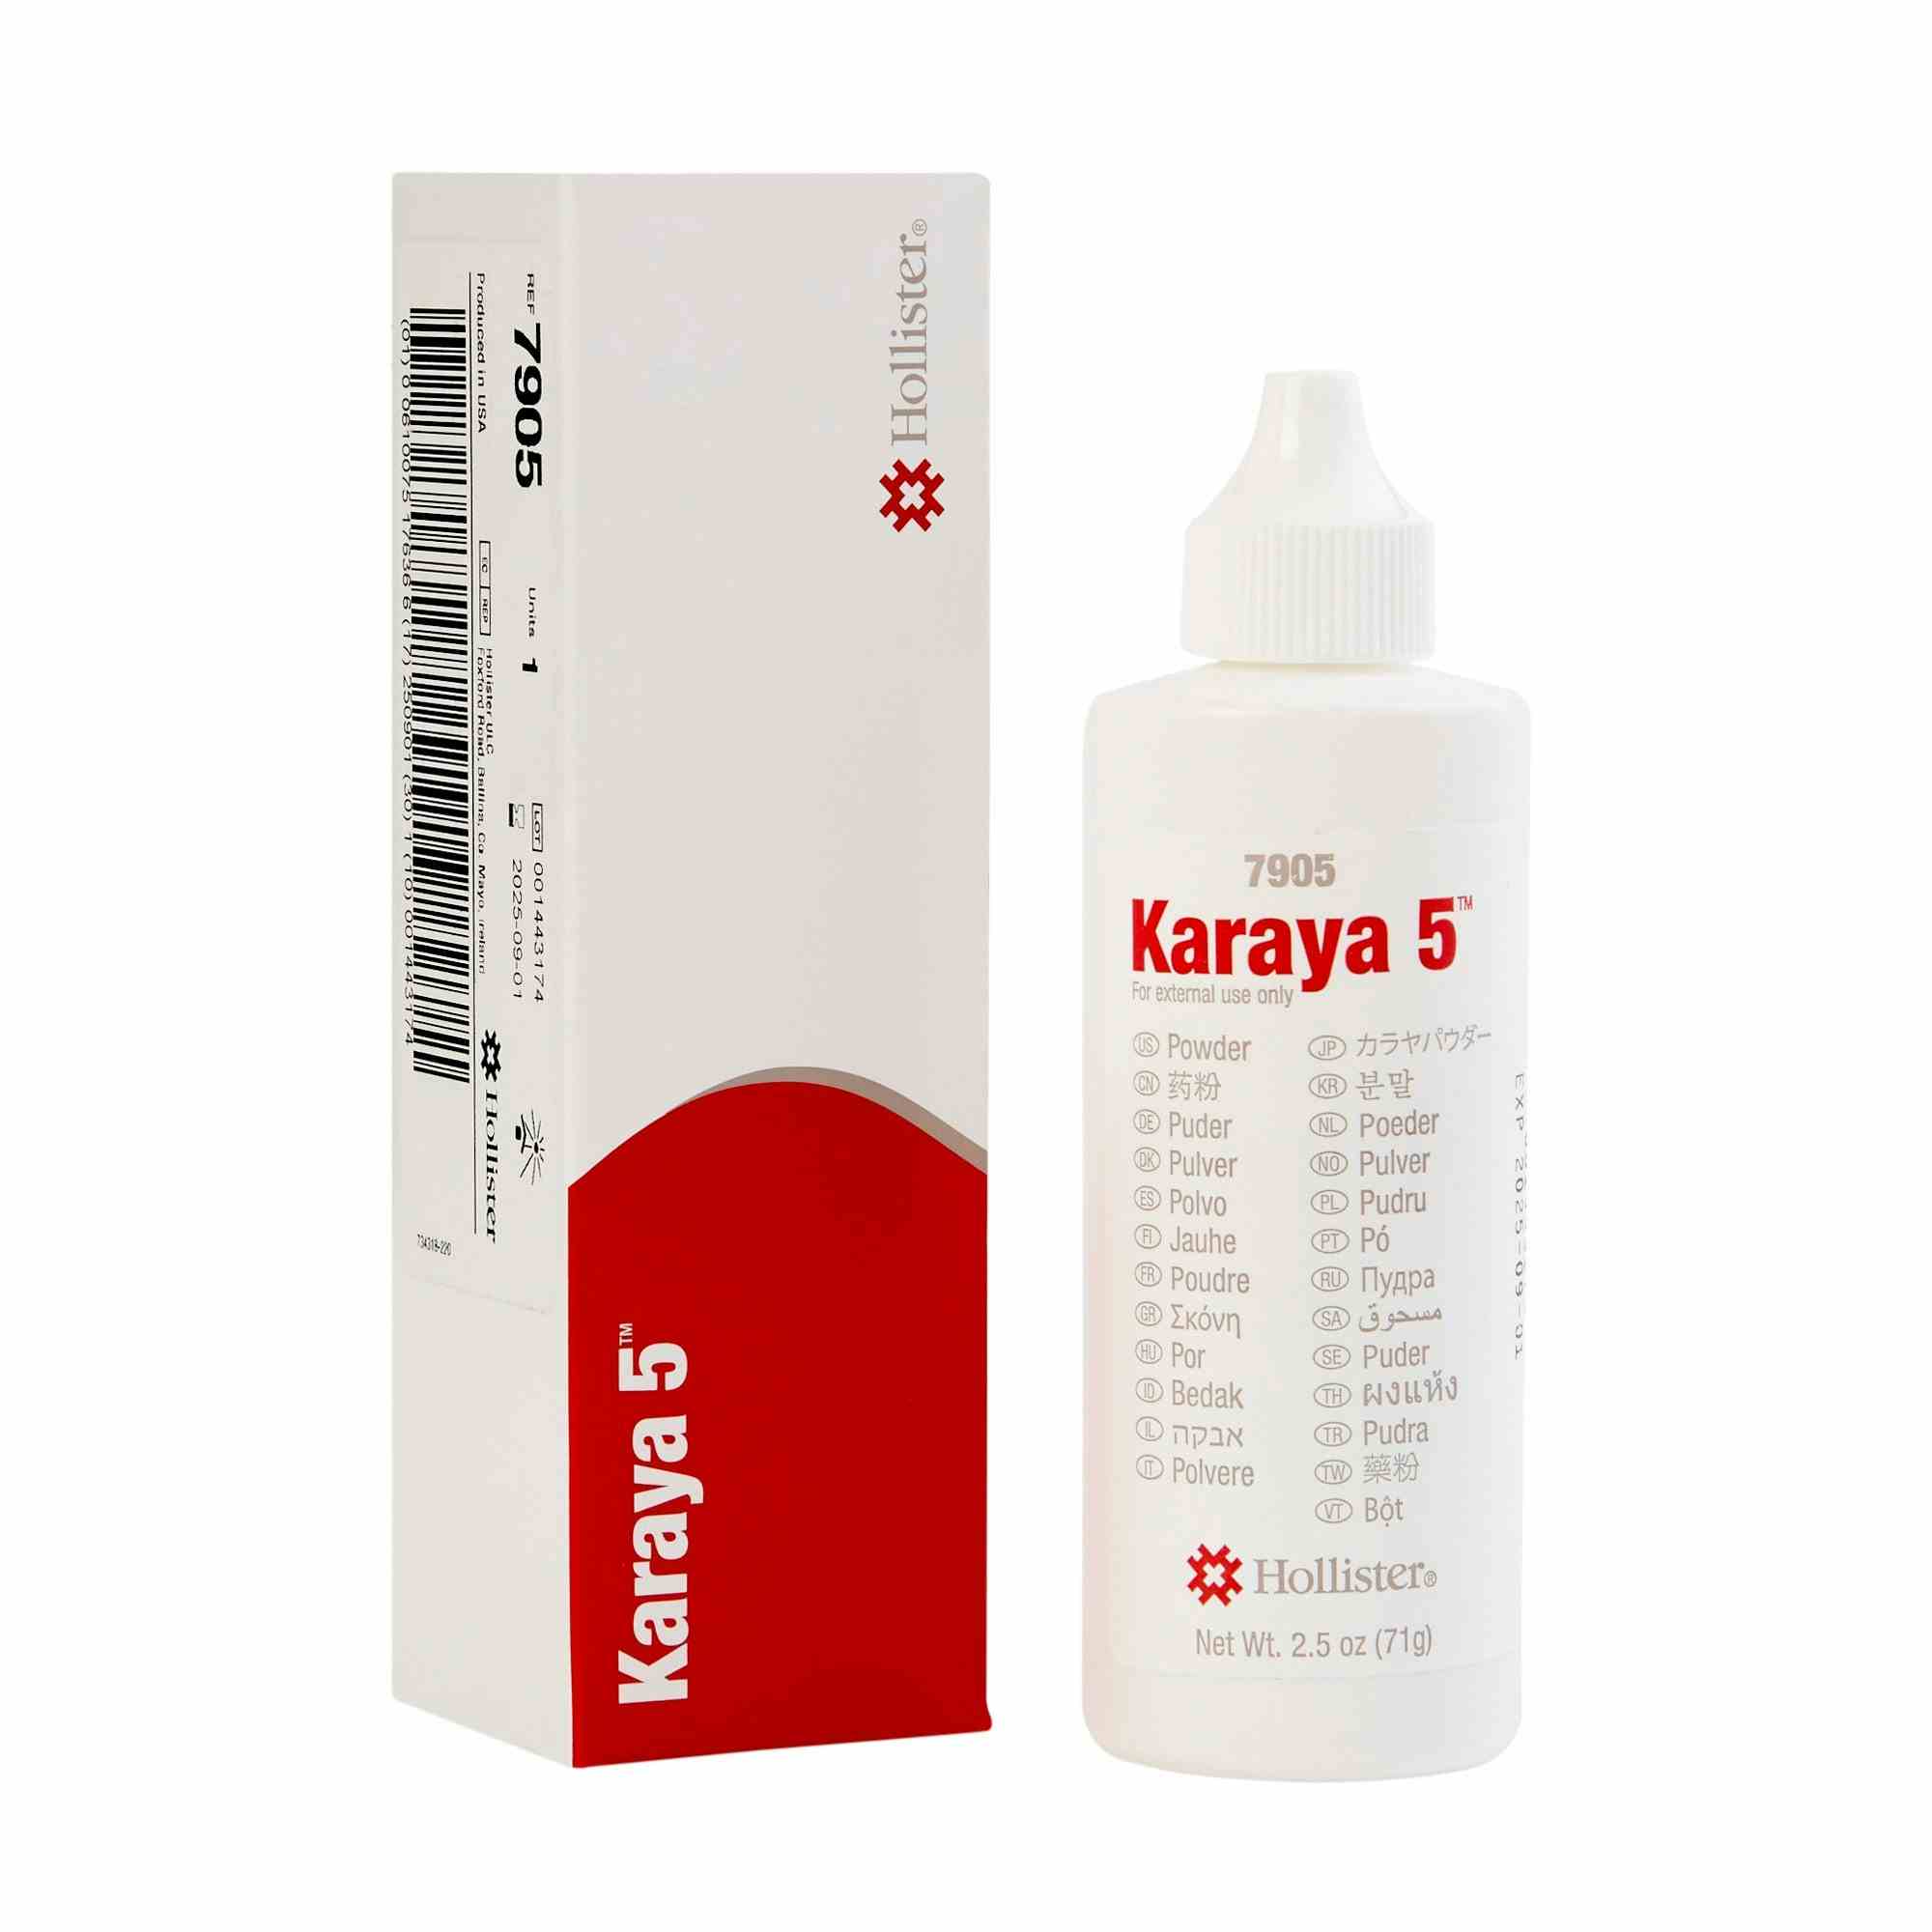 Karaya 5 Ostomy Barrier Powder, 2.5 oz, 7905, 1 Each